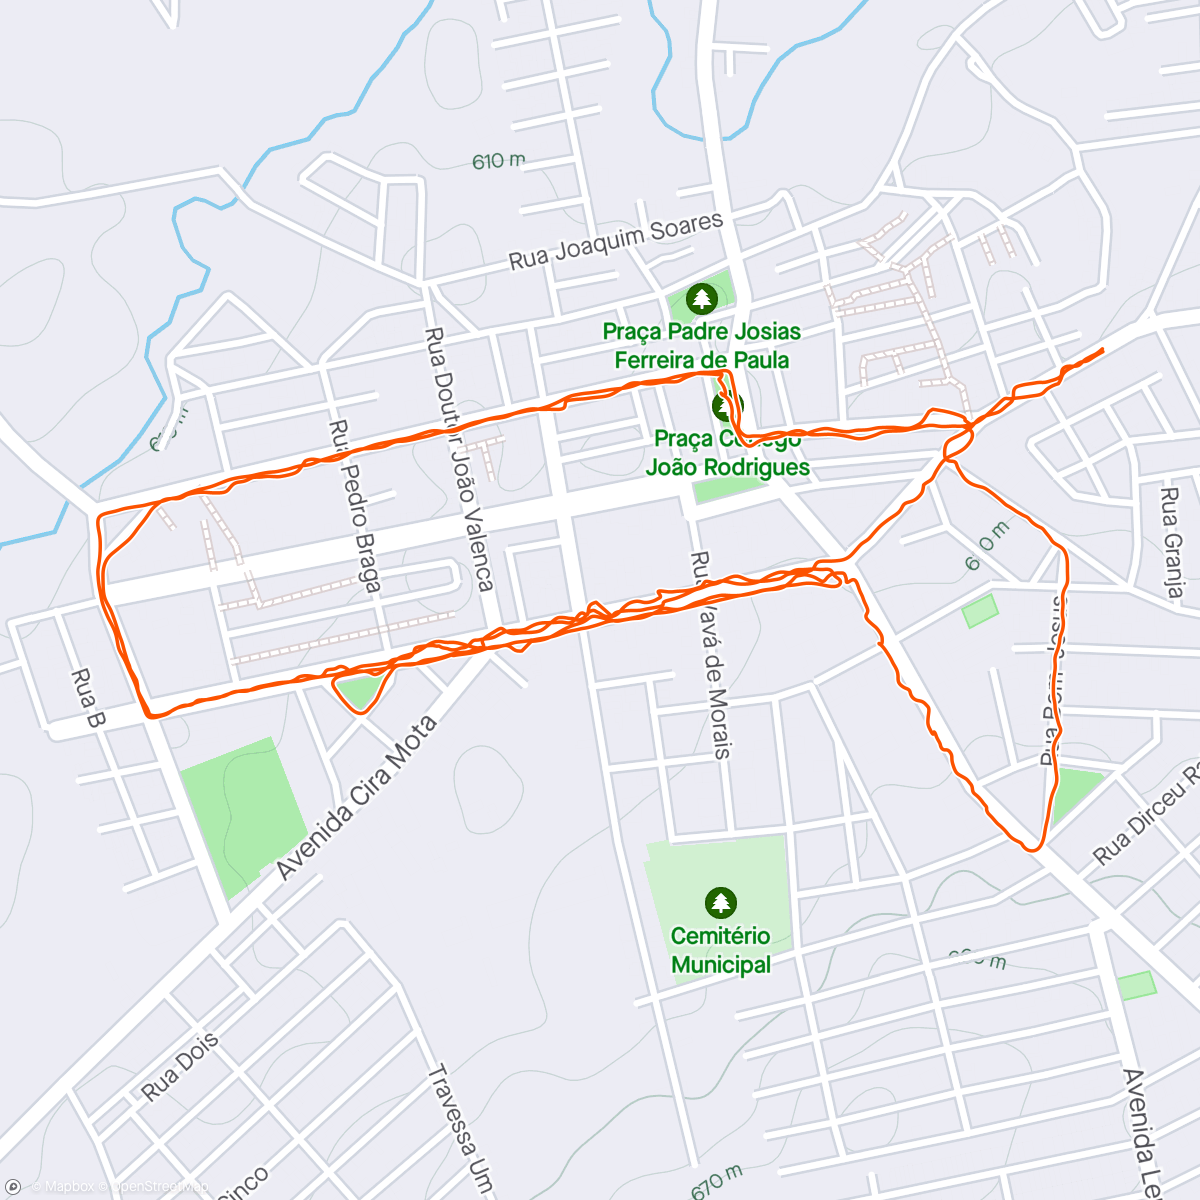 Map of the activity, Caminhada do Sr São Bento.